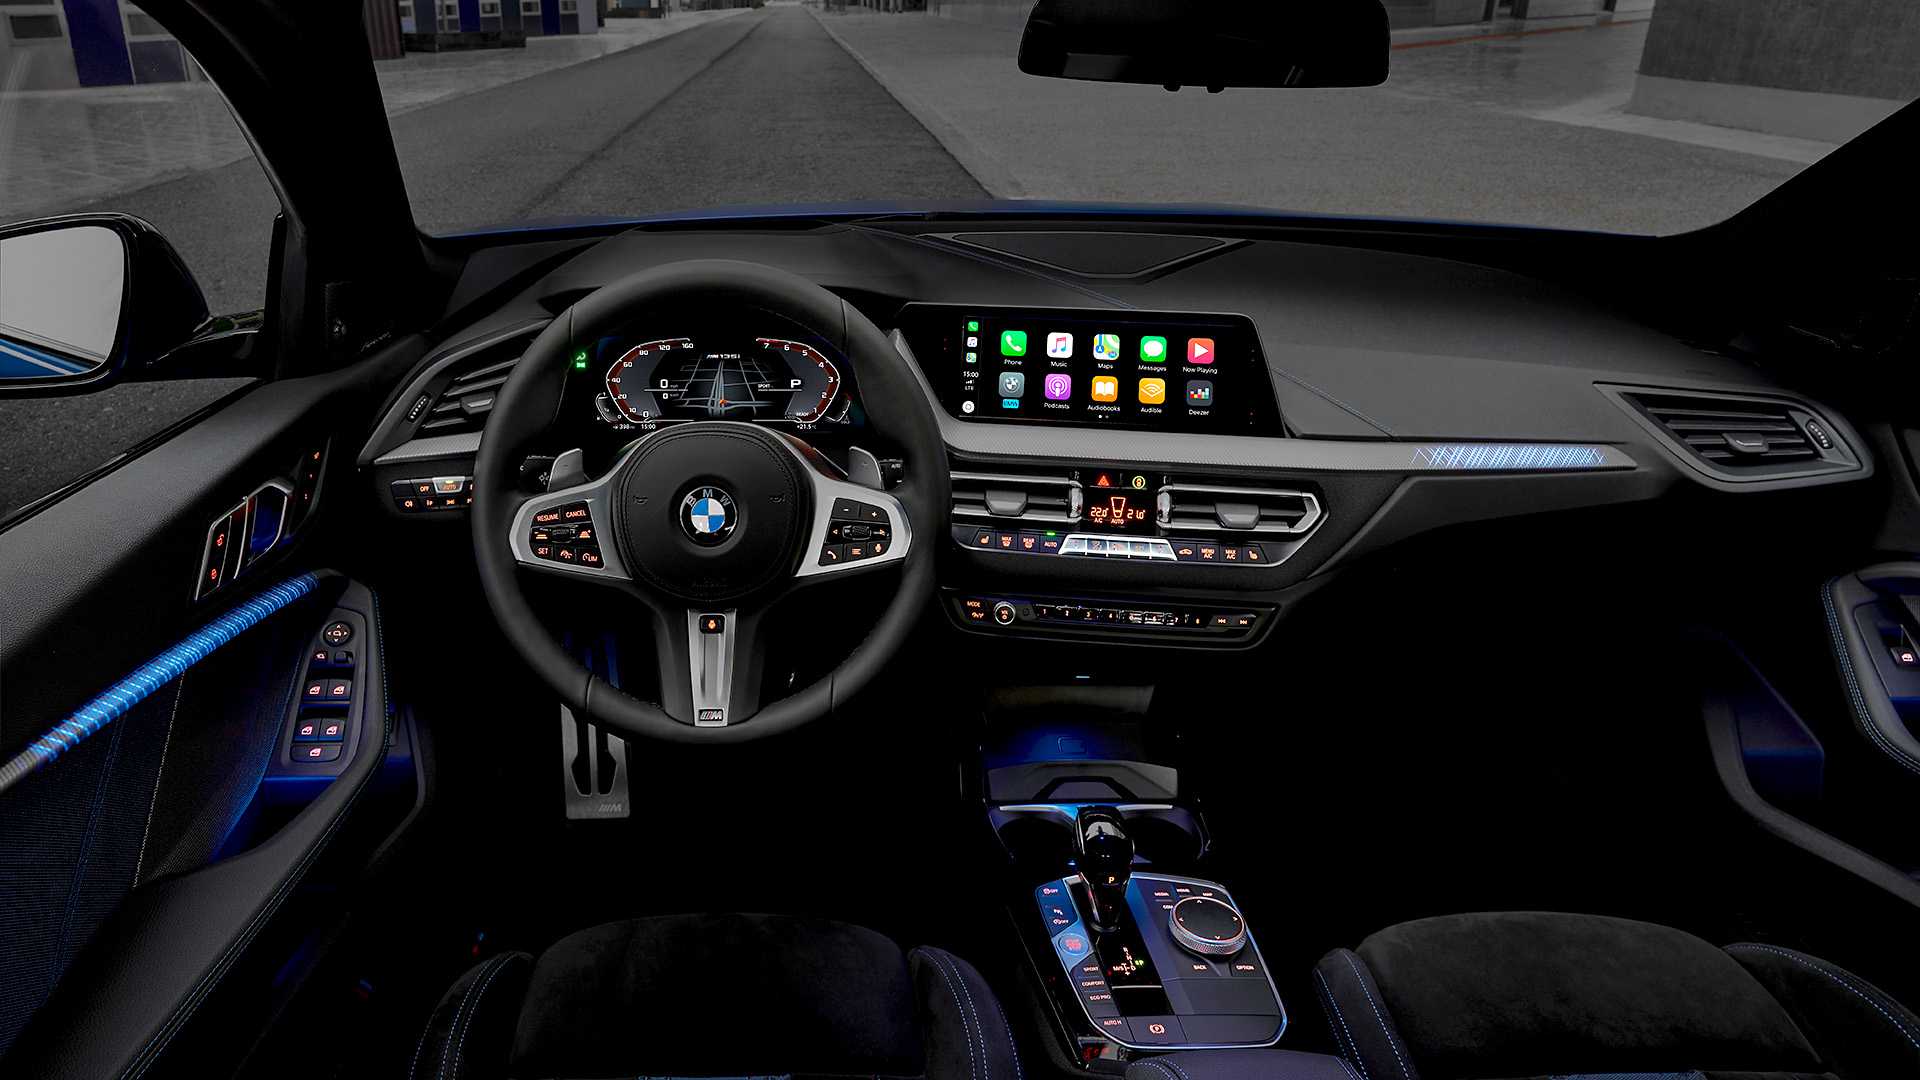 2019 BMW 1 Serisi tanıtıldı: Önden çekişe merhaba